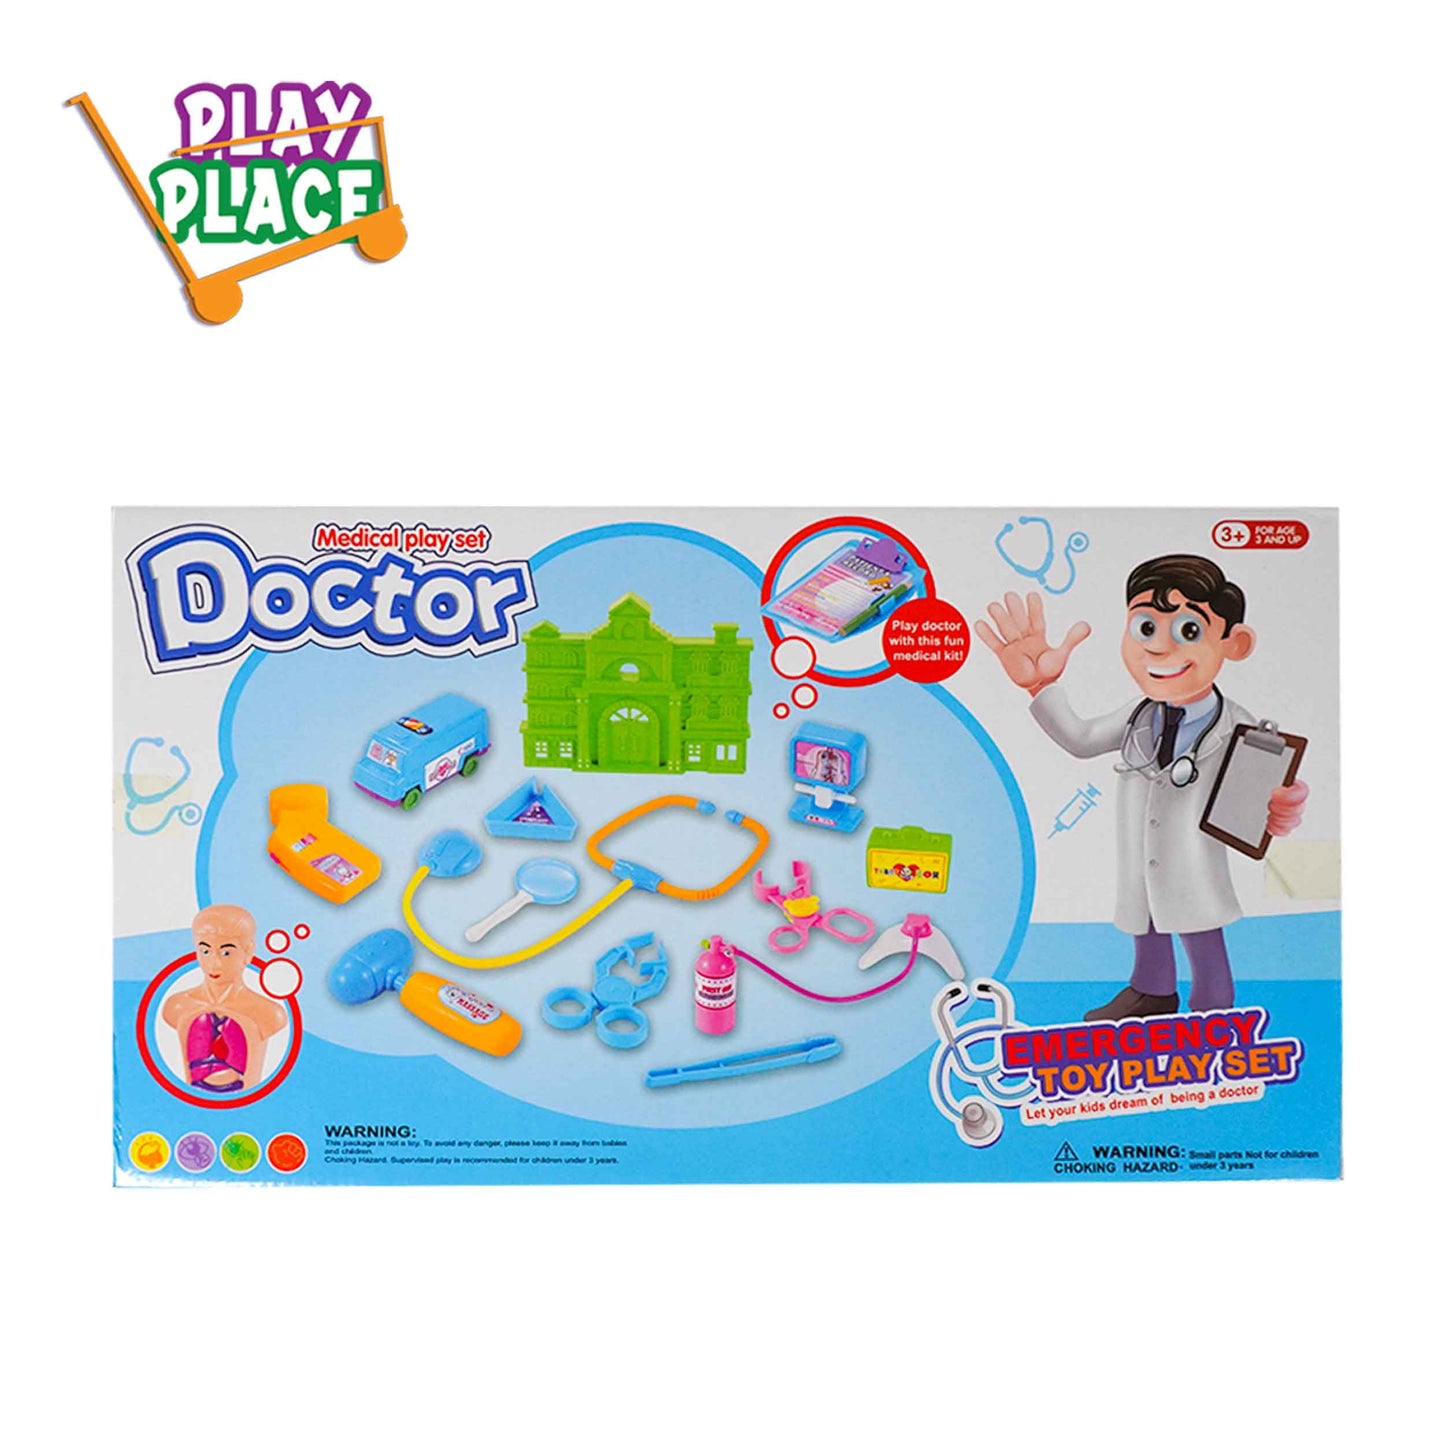 Medical Doctor Playset - Emergency Series